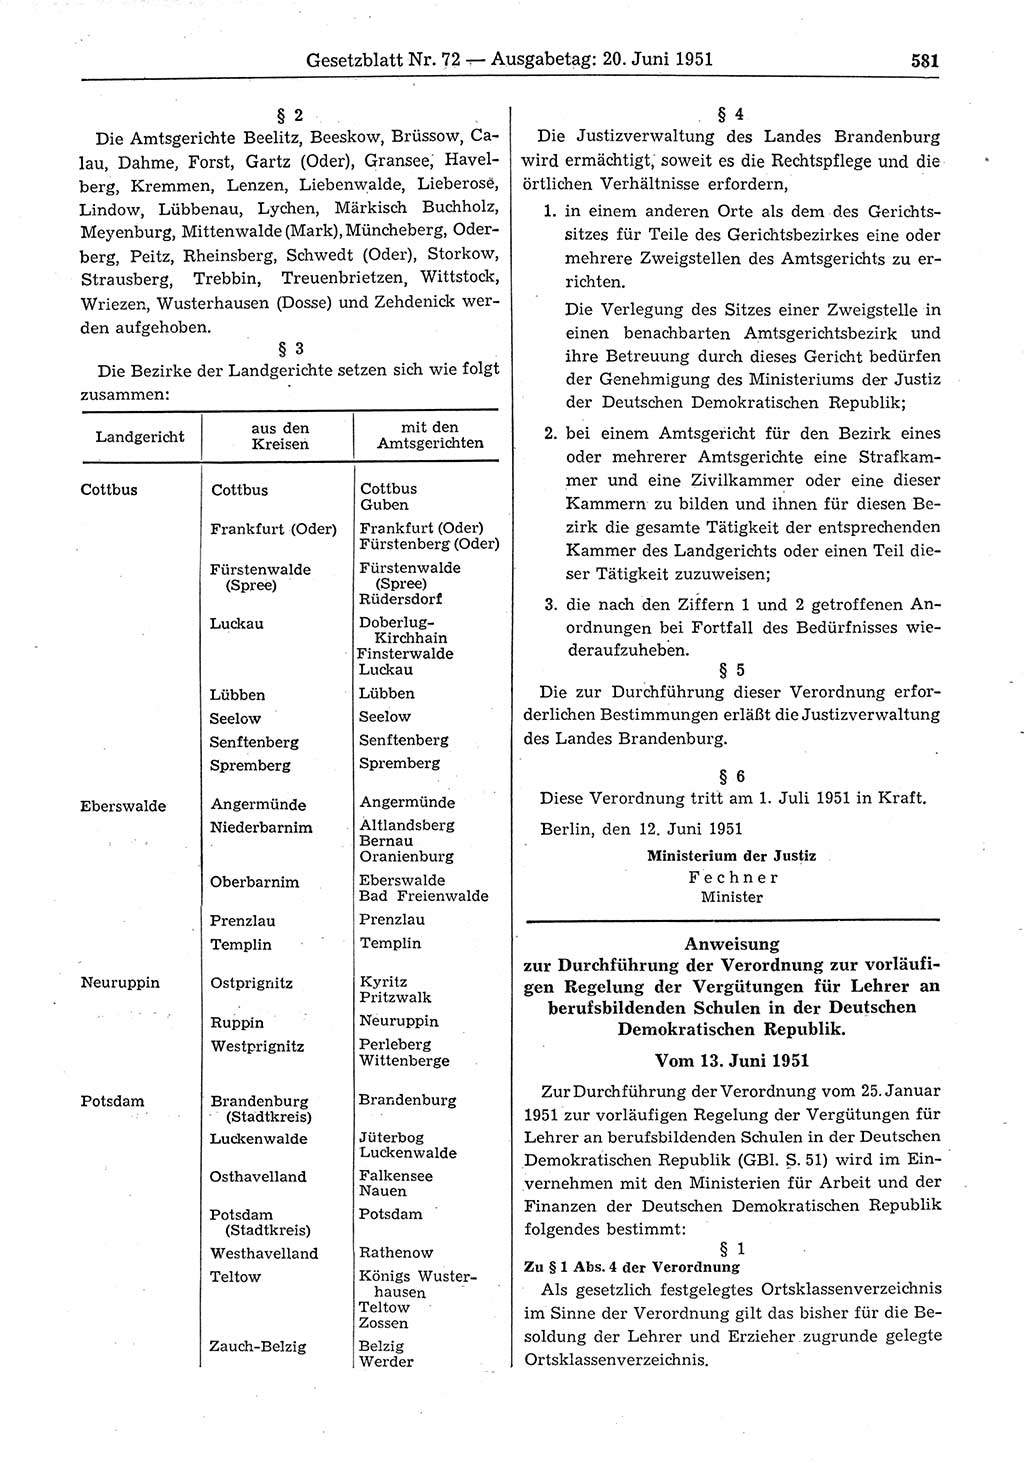 Gesetzblatt (GBl.) der Deutschen Demokratischen Republik (DDR) 1951, Seite 581 (GBl. DDR 1951, S. 581)